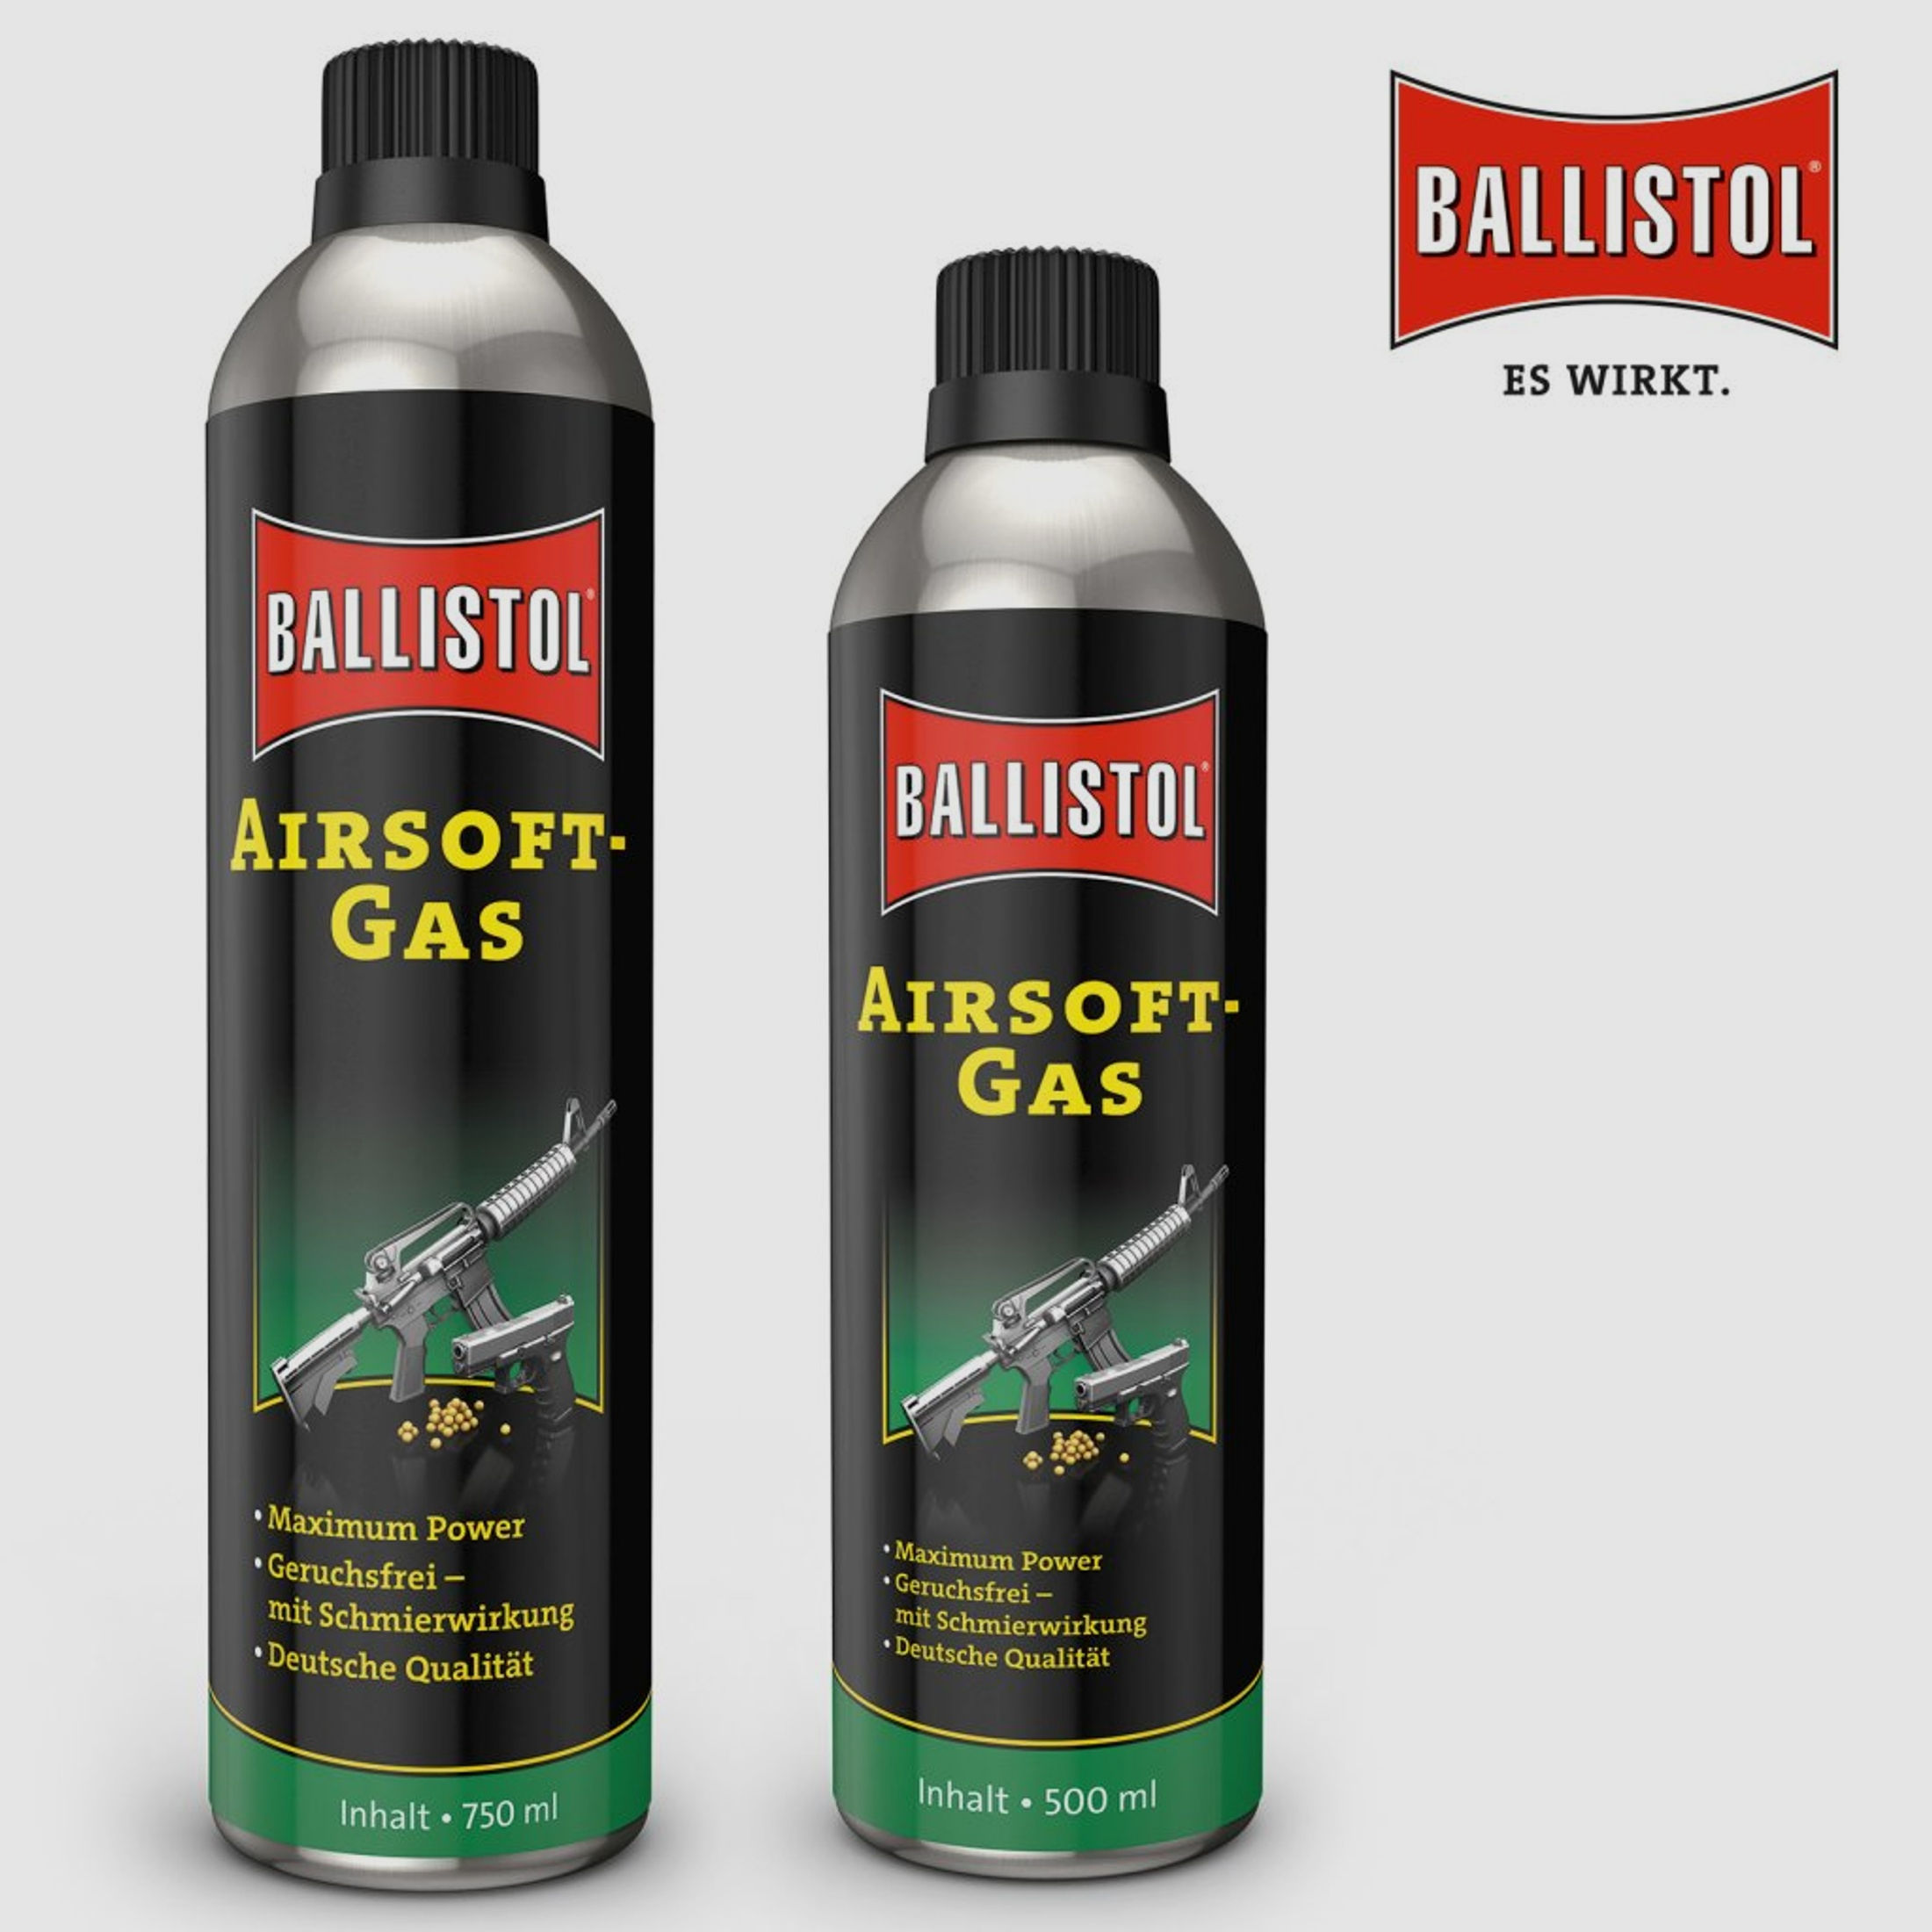 BALLISTOL Airsoft-Gas